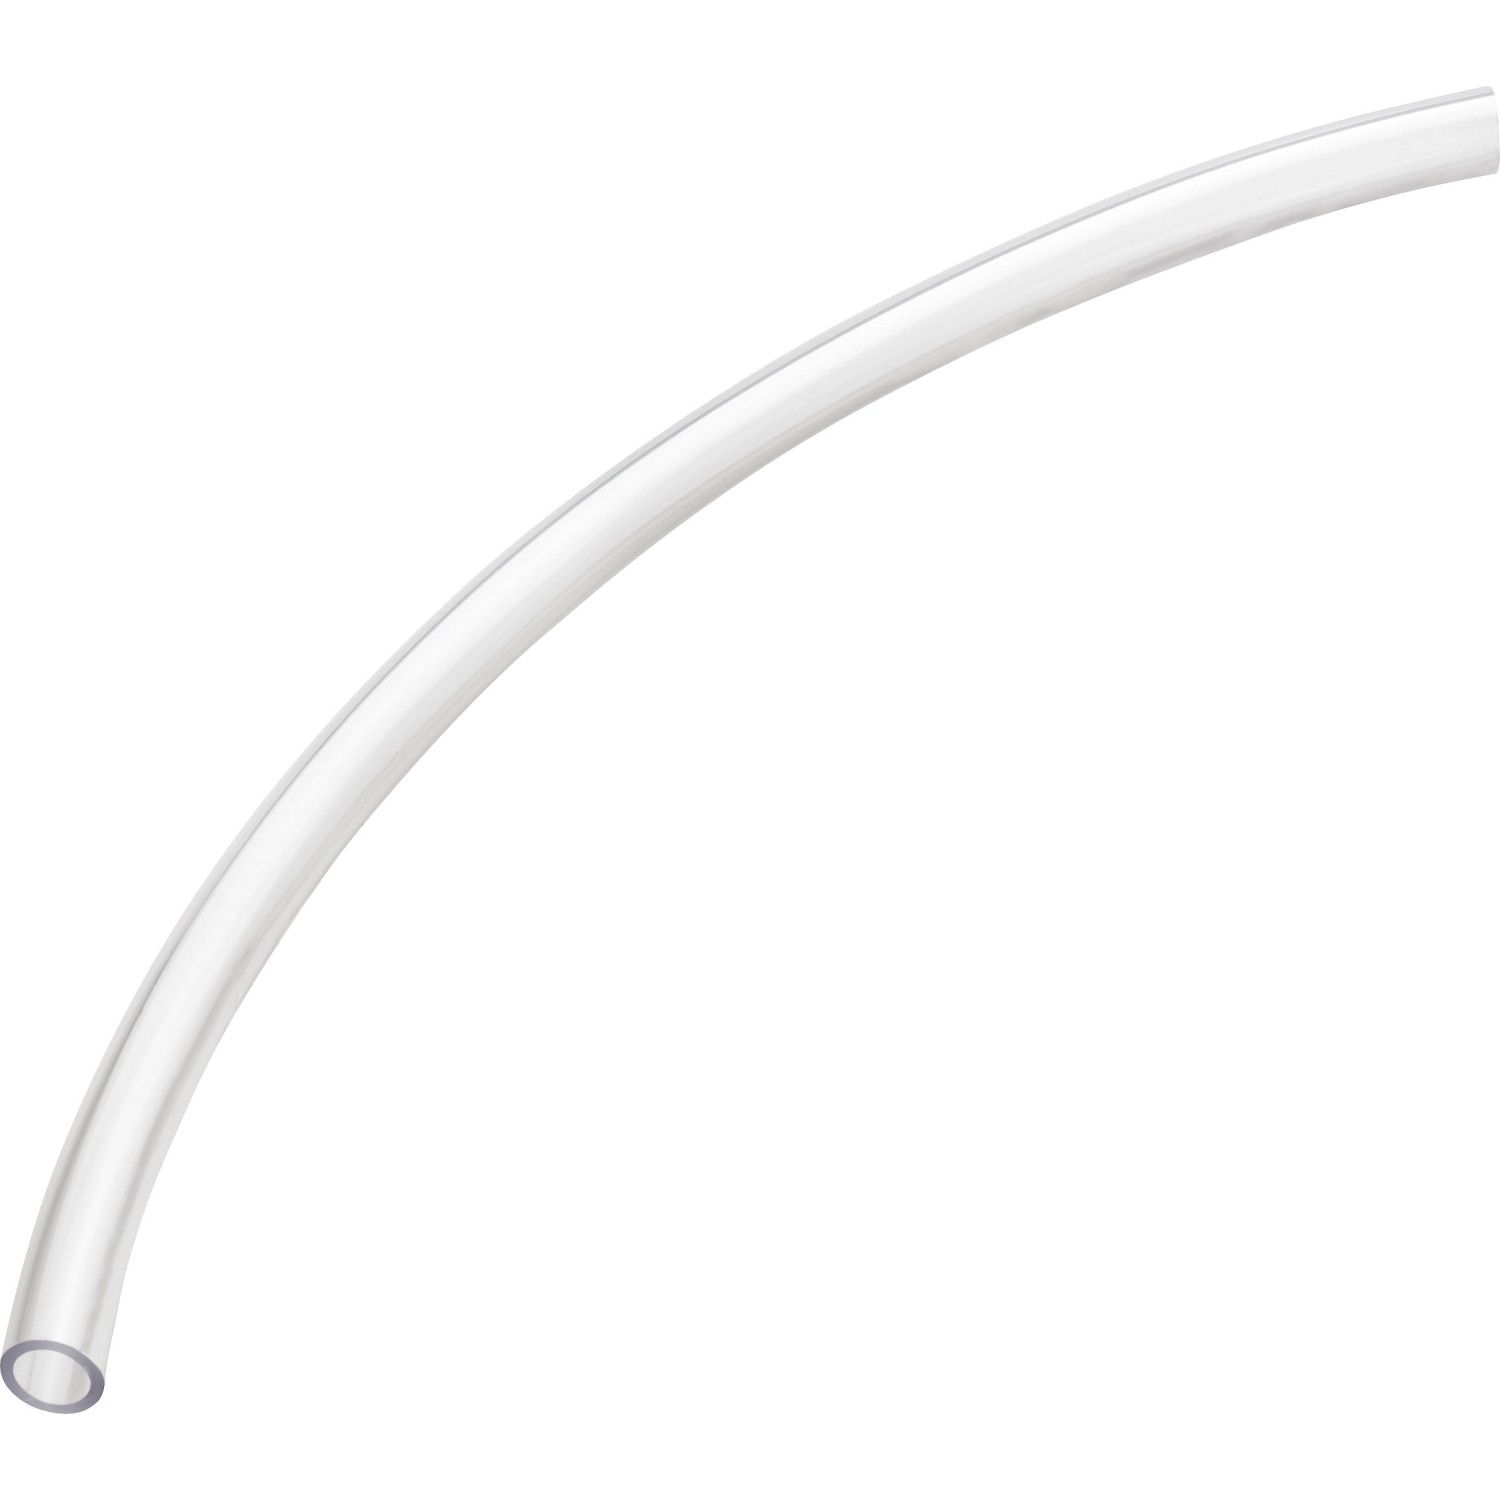 Glasklarschlauch PVC Ø 6 mm Meterware kaufen bei OBI